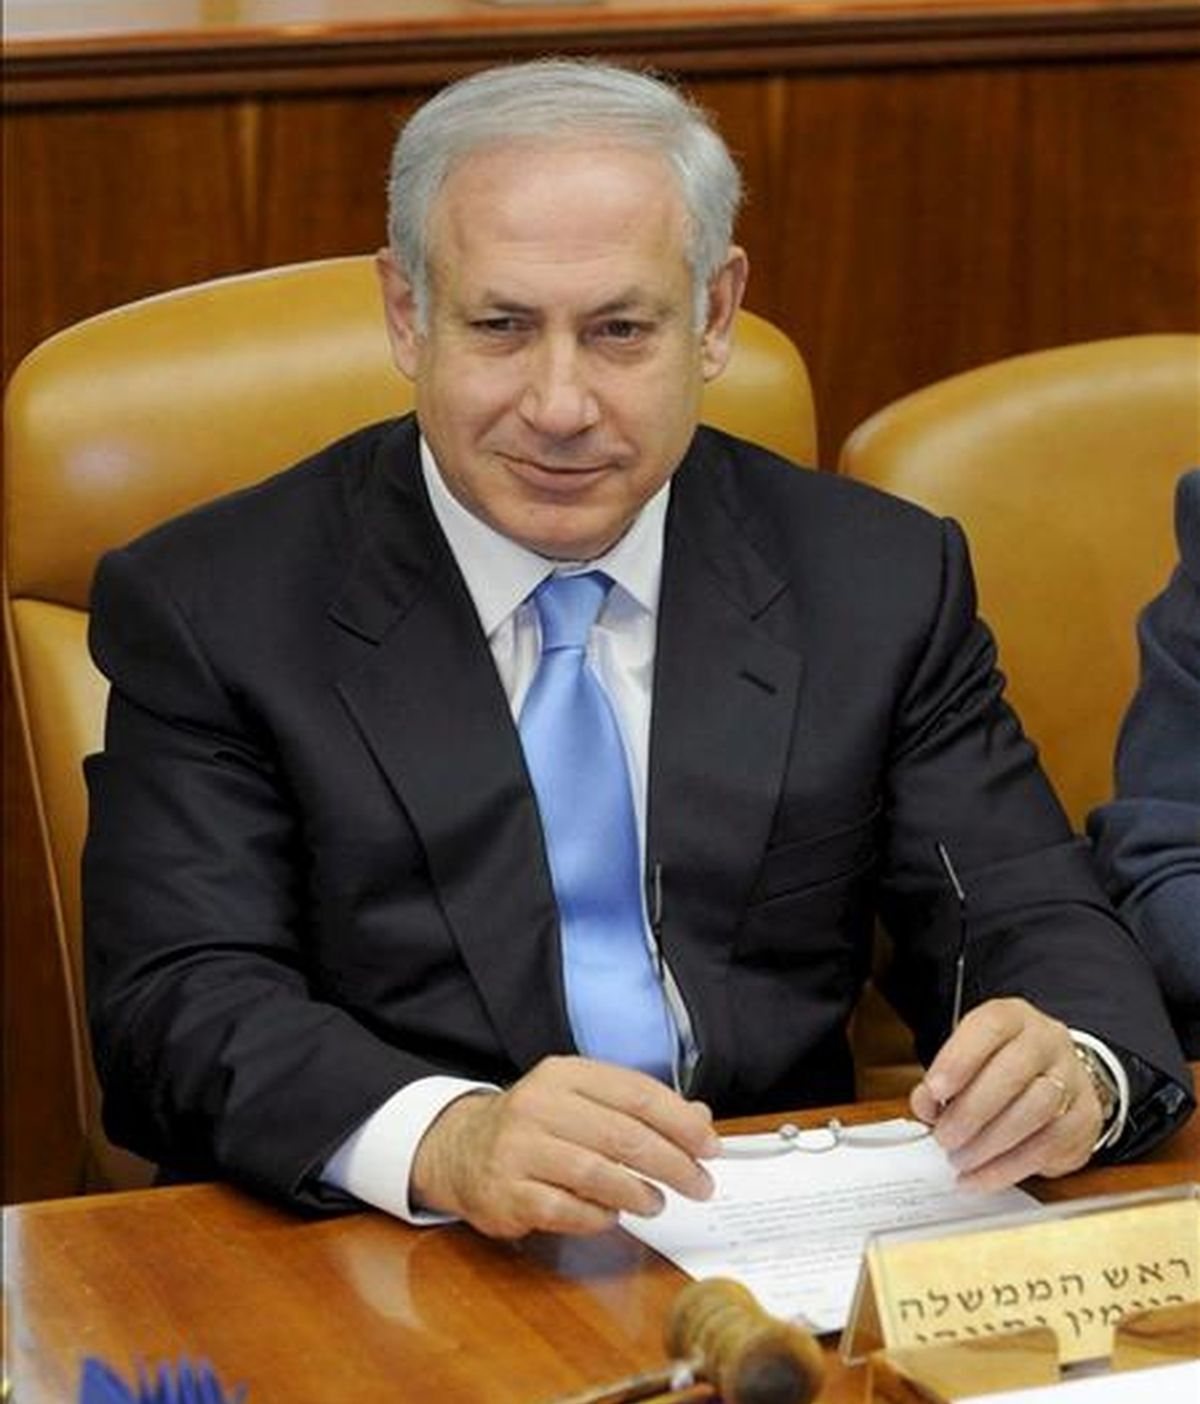 Fotografía facilitada por el Departamento de Prensa del Gobierno de Israel que muestra al primer ministro israelí, Benjamín Netanyahu, durante la primera reunión semanal del nuevo gobierno israelí, hoy en Jeruslén (Israel). EFE